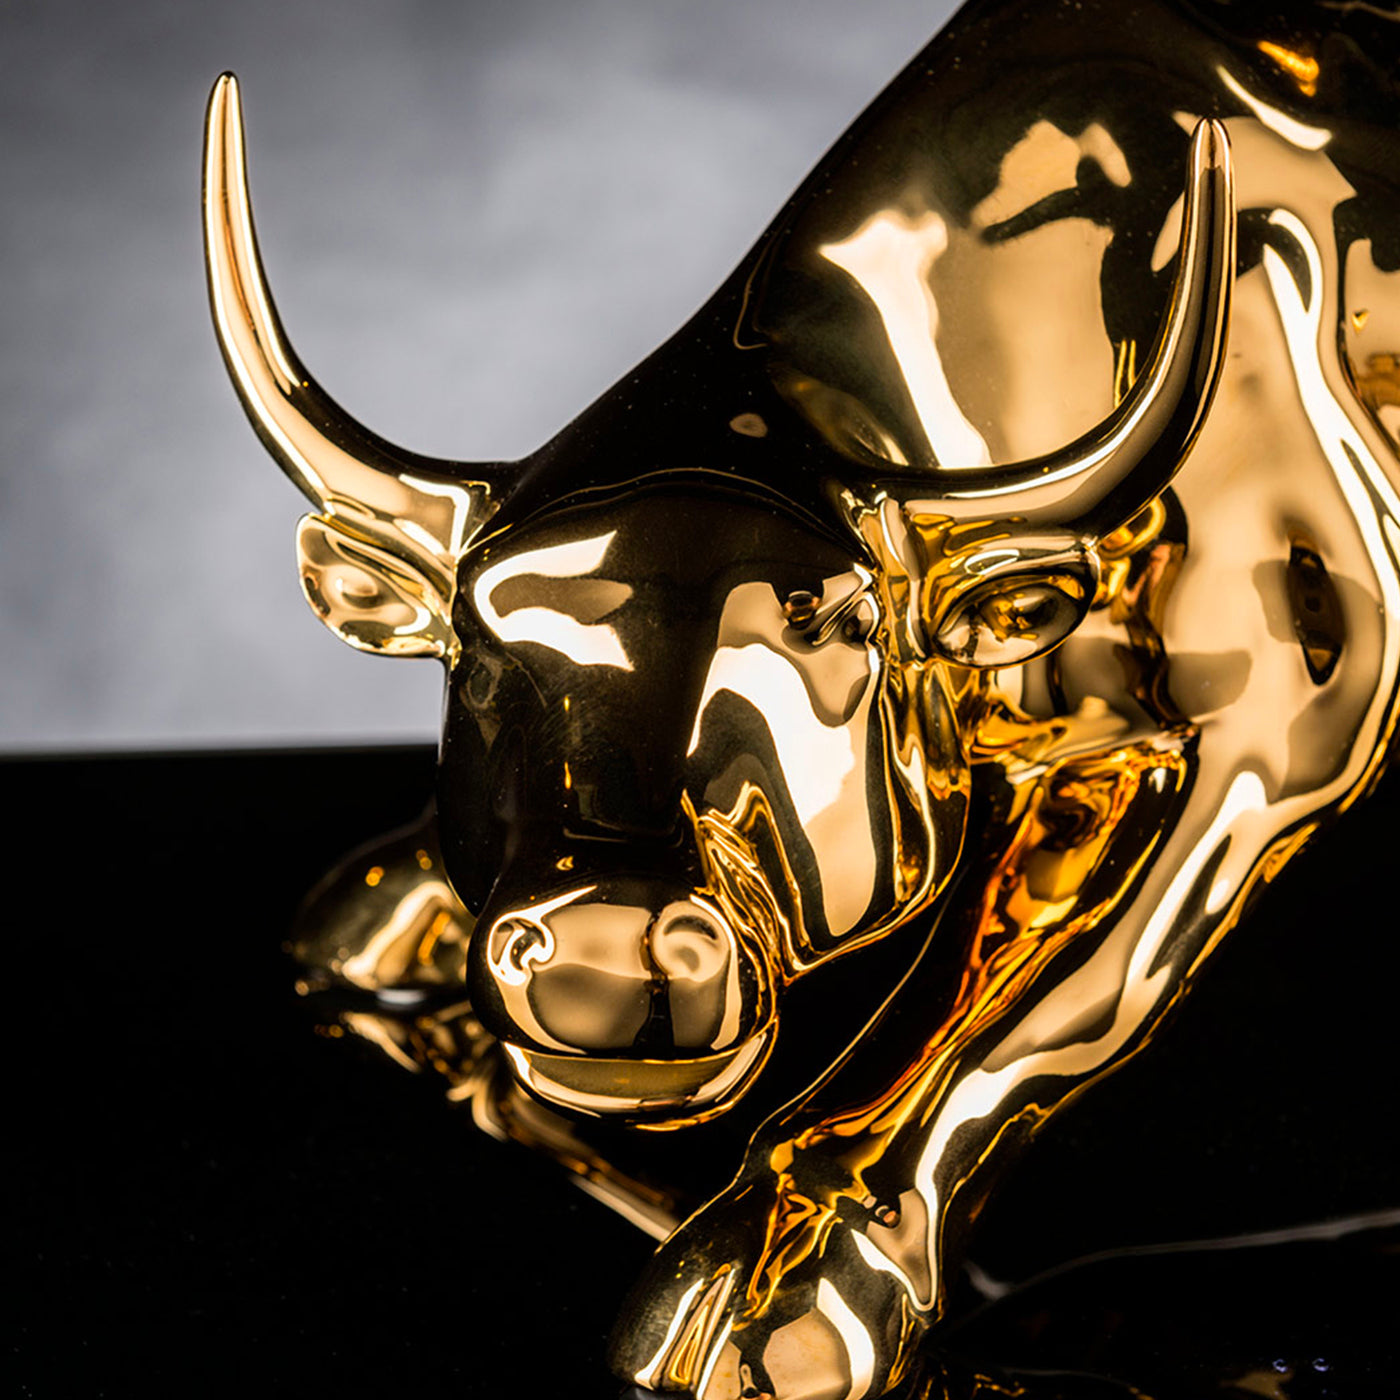 Wall Street Bull Large Golden Sculpture - Alternative view 1